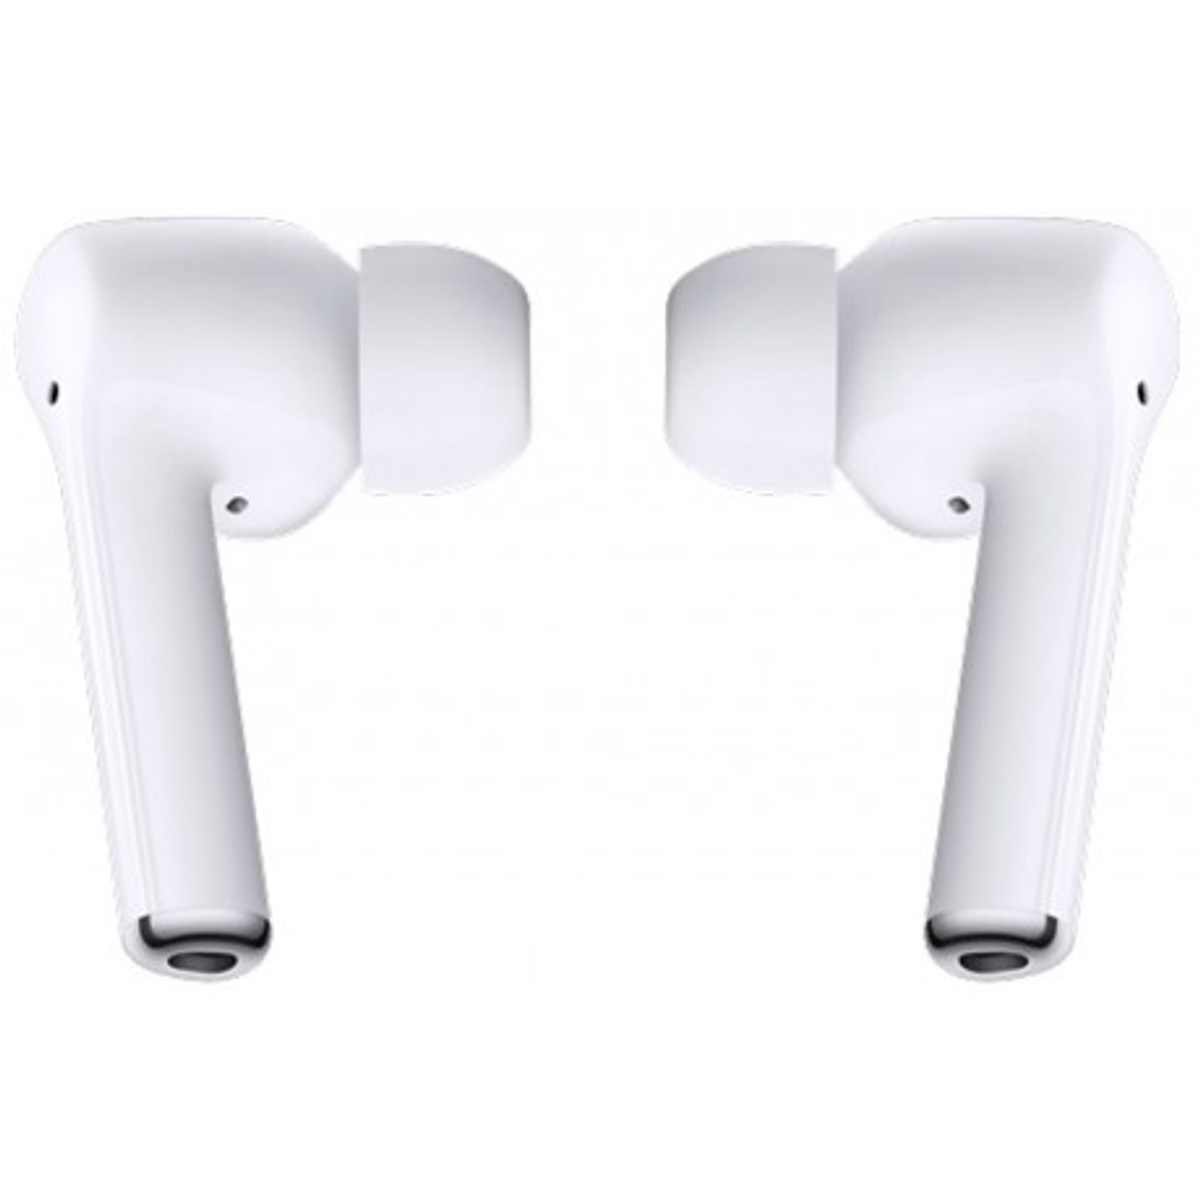 HUAWEI Freebuds Kopfhörer weiß 3i, In-ear Bluetooth